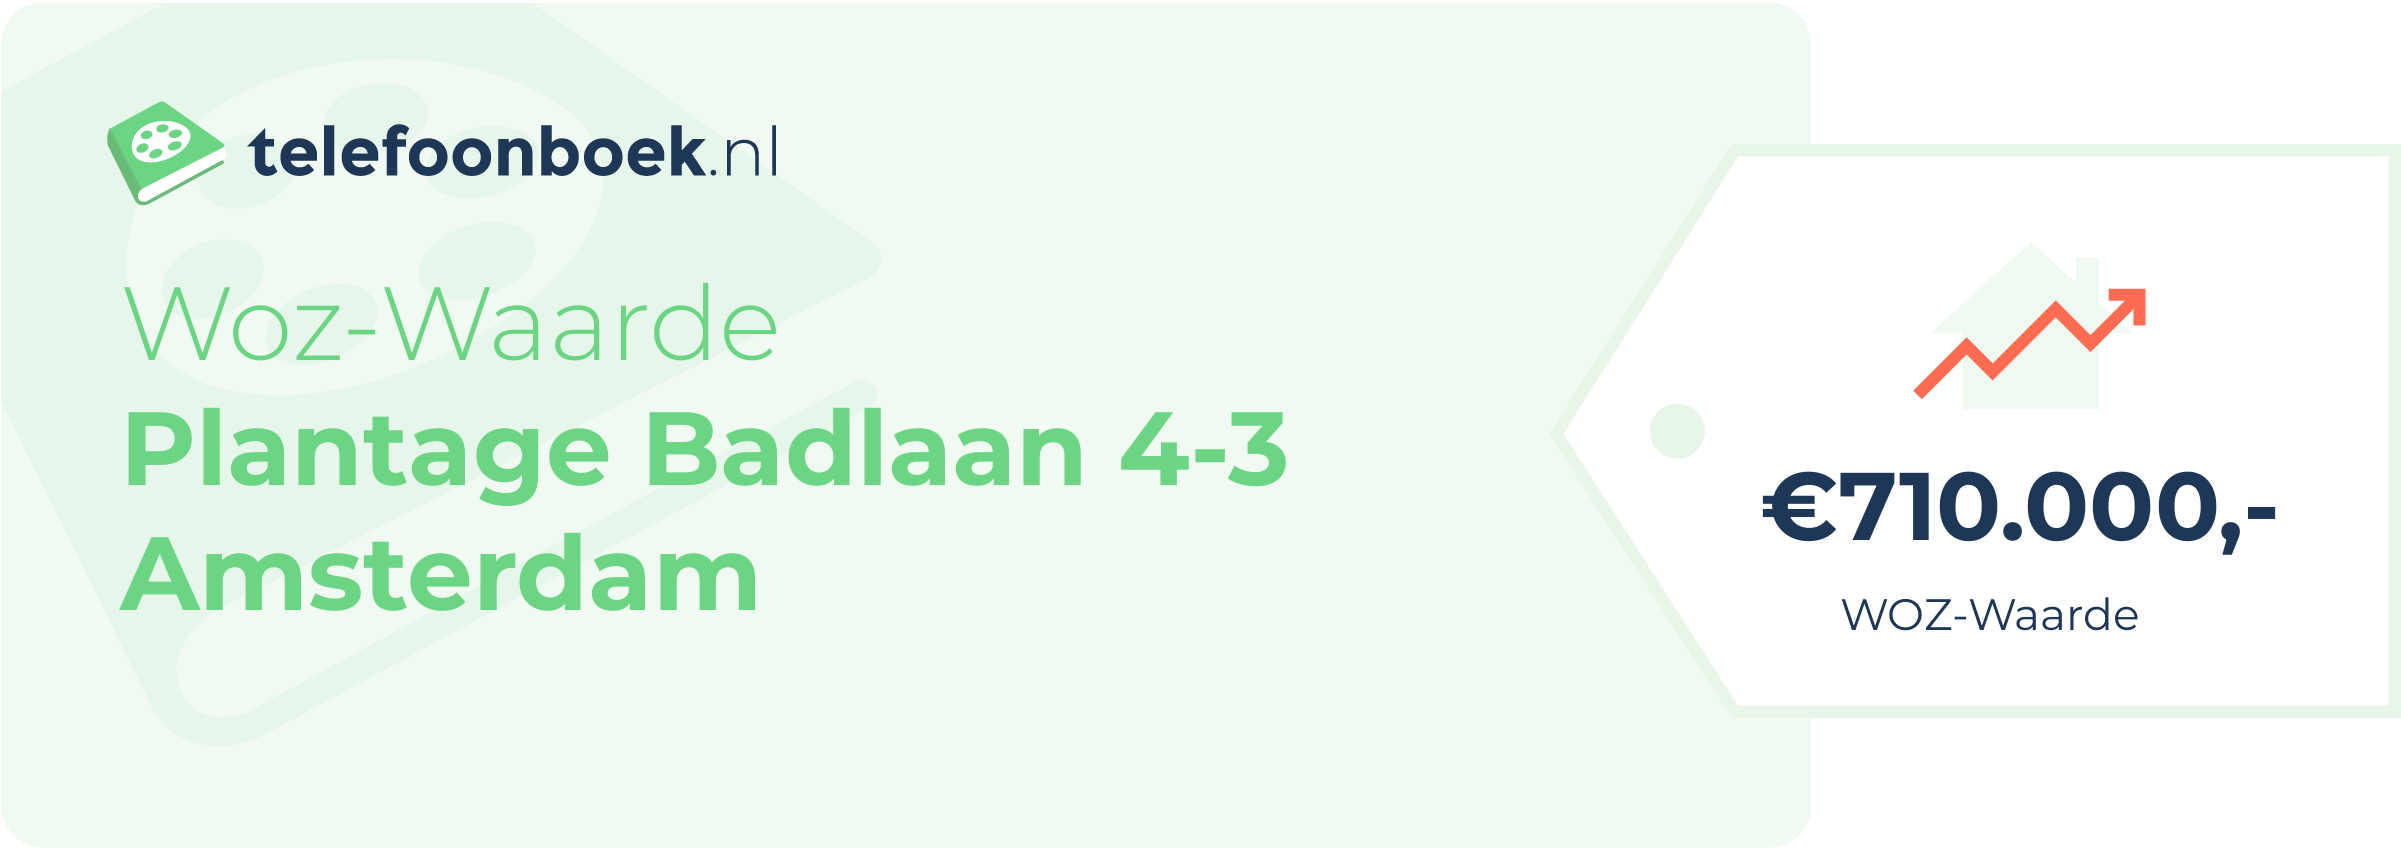 WOZ-waarde Plantage Badlaan 4-3 Amsterdam